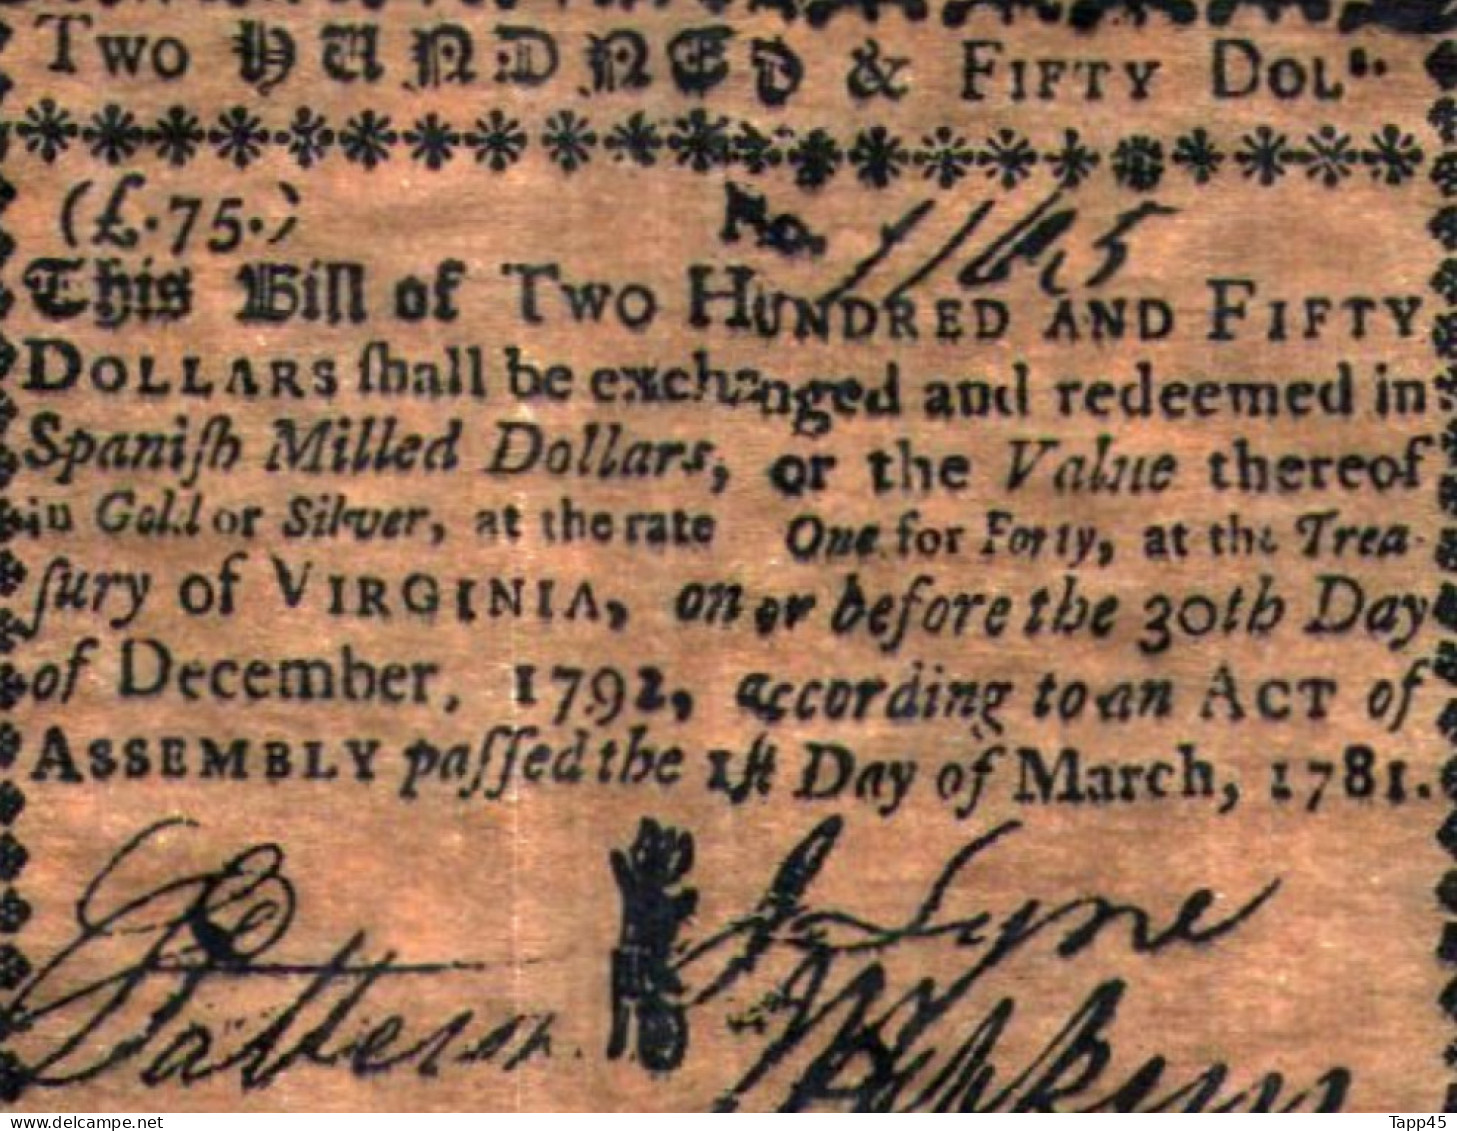 Surprenant Lot de 14 billets état d'Amérique fondé en 1776 (peut être des copies mais anciennes vue le papier) Réf:C03